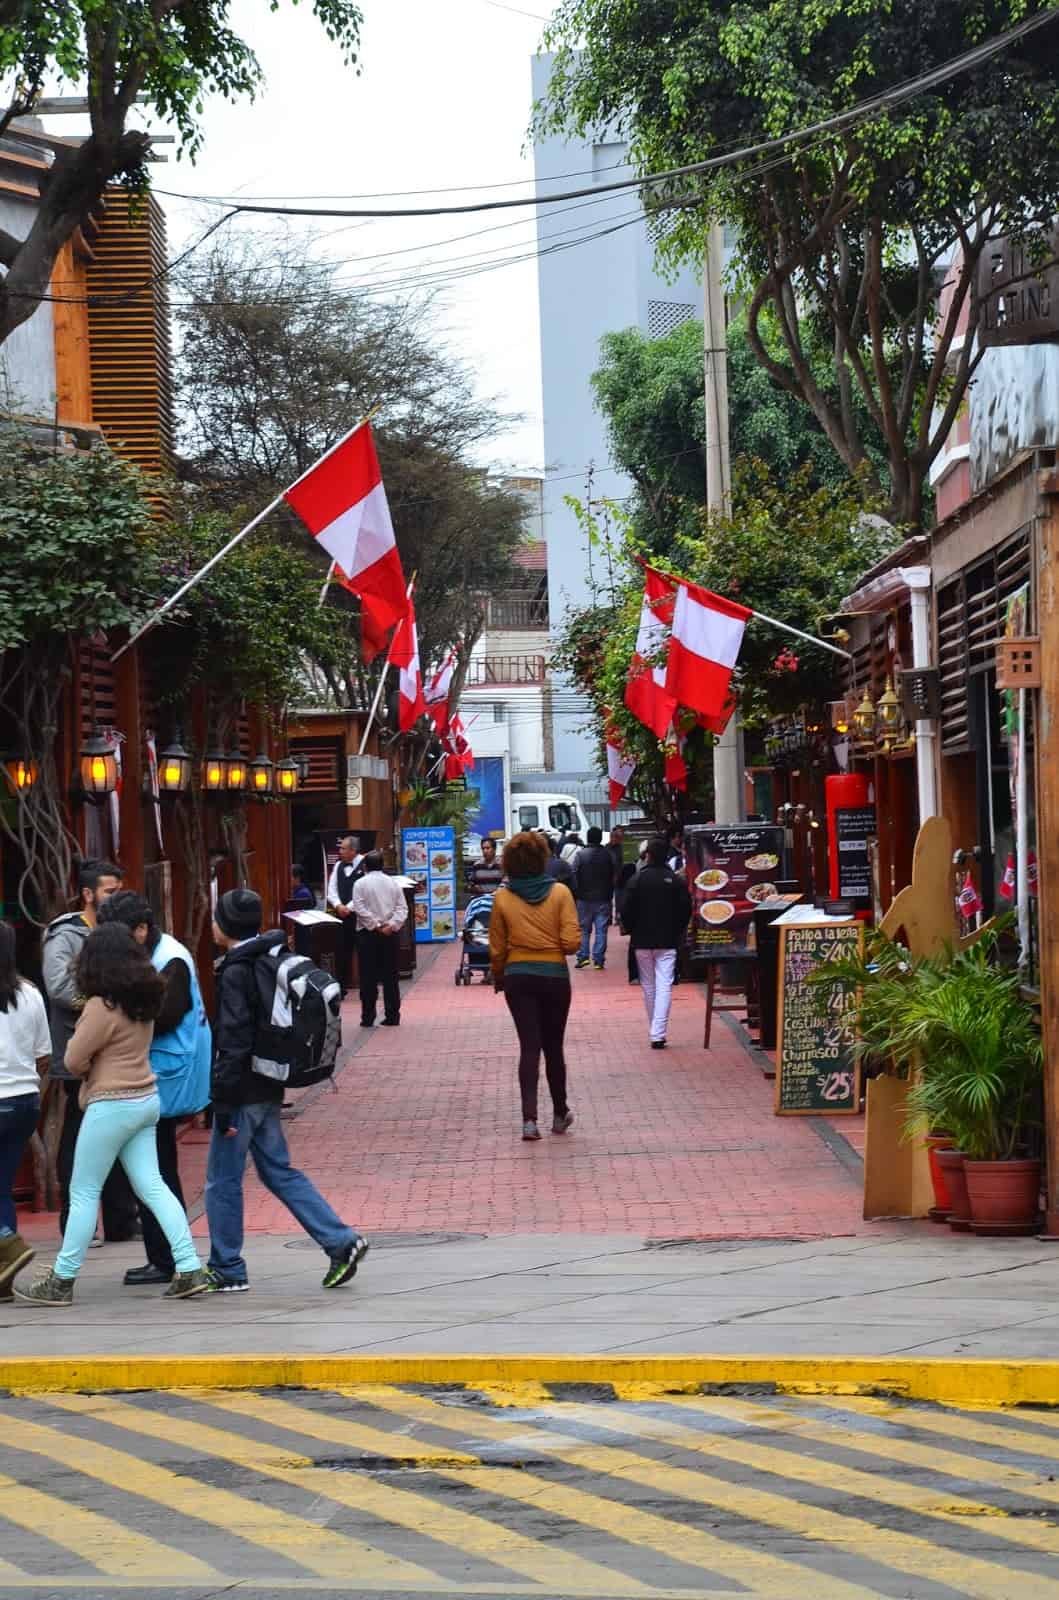 Calle de las Pizzas in Miraflores, Lima, Peru